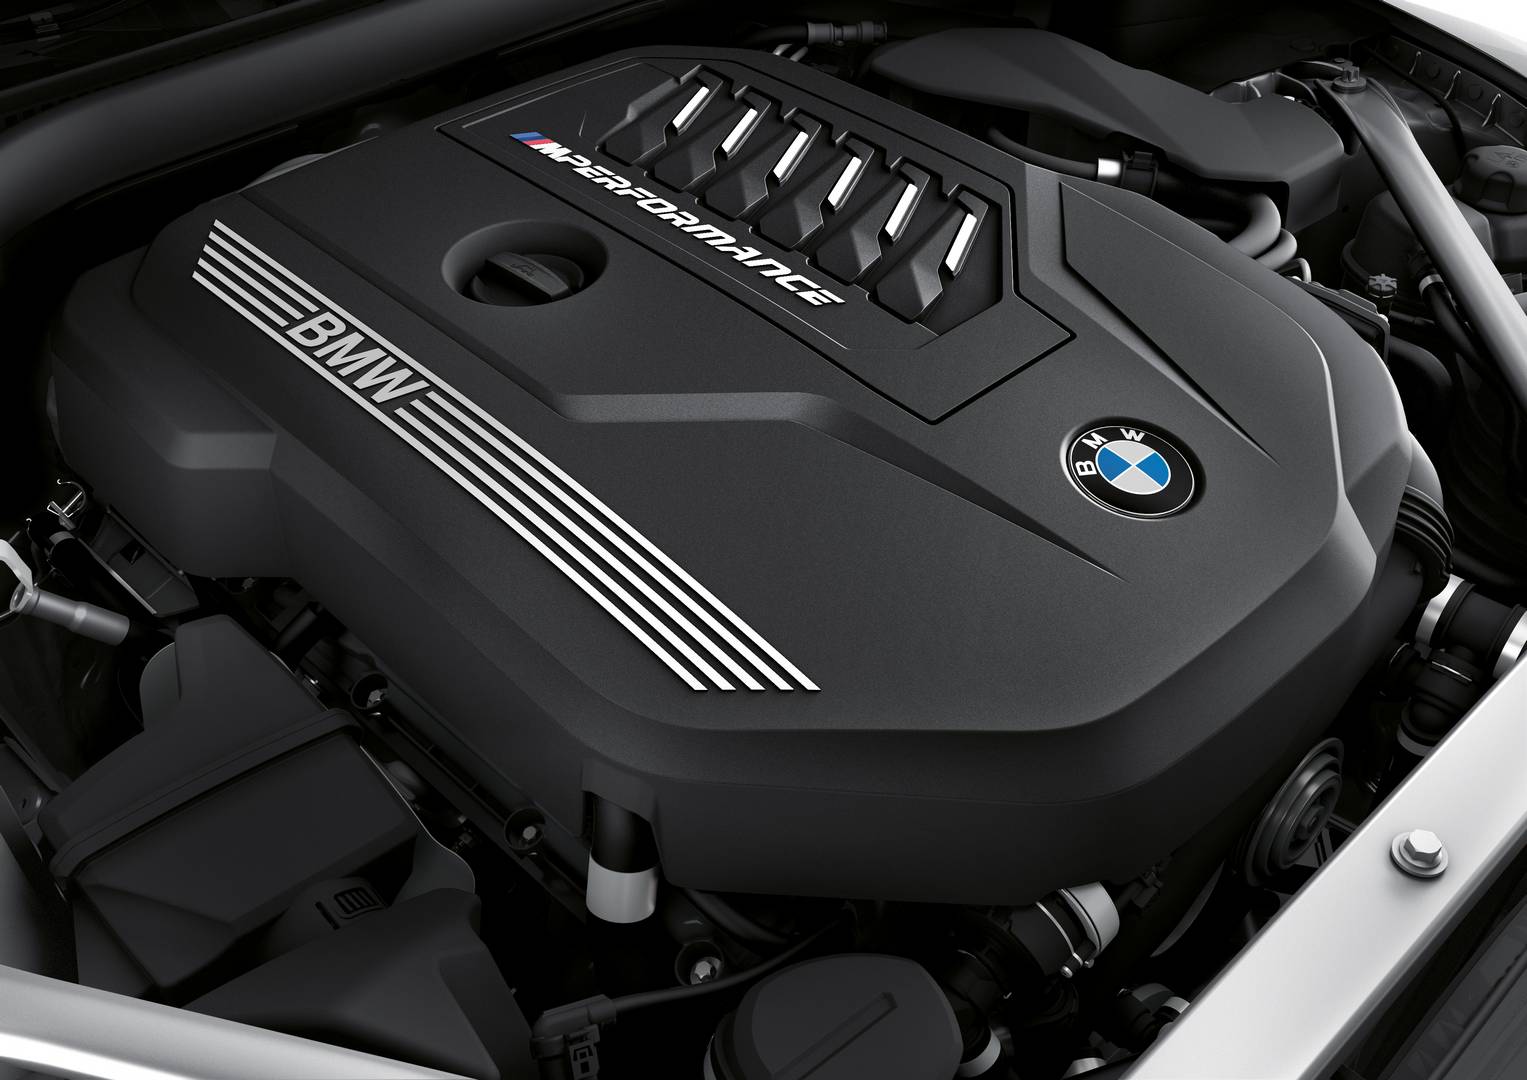 Интерьер BMW Z4 M40i First Edition получил черную кожаную отделку Vernasca с декоративной строчкой, электрически регулируемые сиденья с функцией памяти, возможность окружающей подсветки и аудио-систему Harman Kardon Surround Sound. Адаптивные светоди